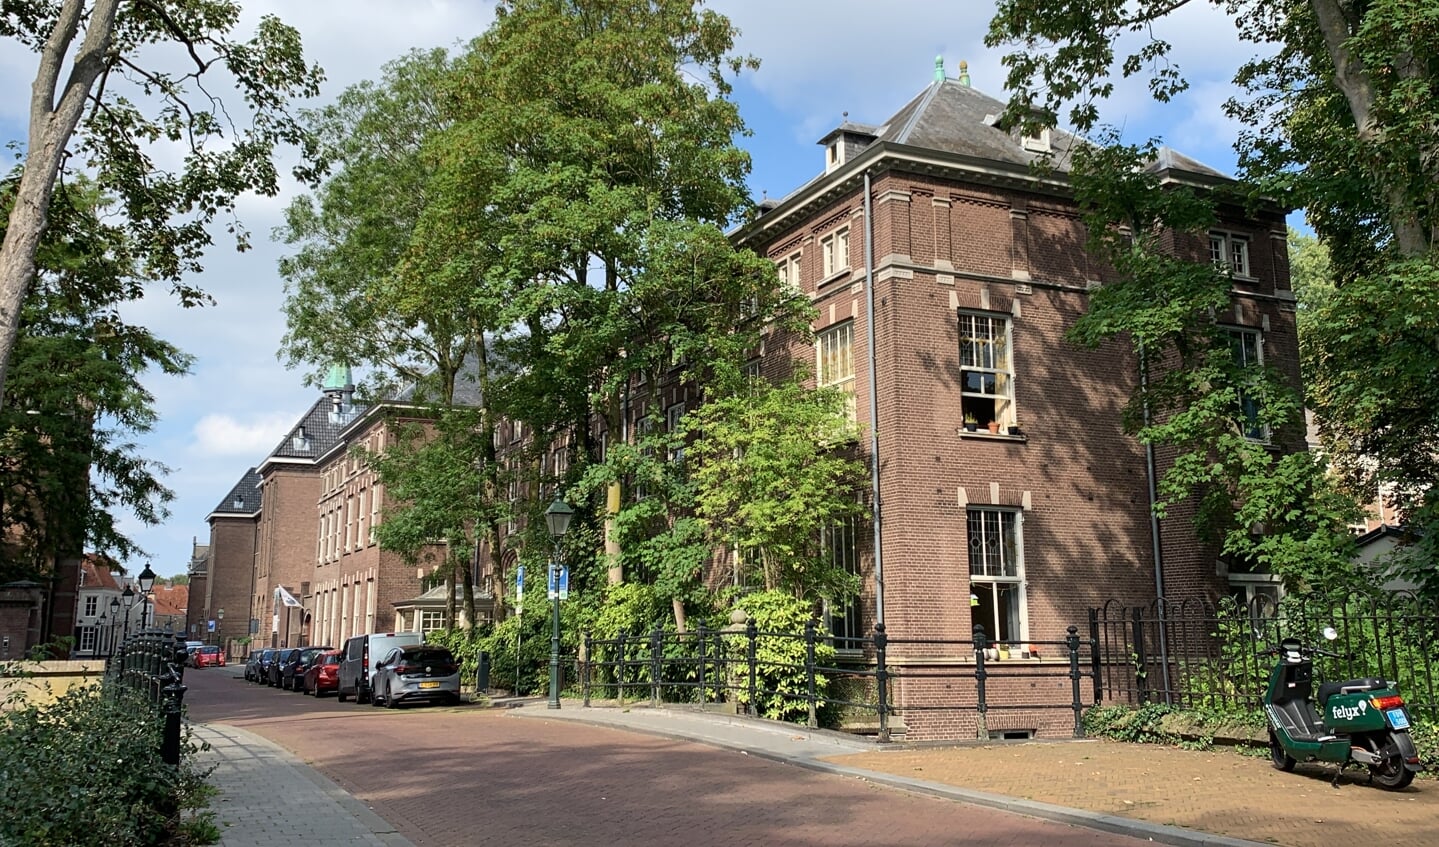 Foto van het rijksmonument ‘St. Joan de Deo’ aan de Papenhulst 26 in Den Bosch anno 2022. Collectie: Erfgoed 's-Hertogenbosch